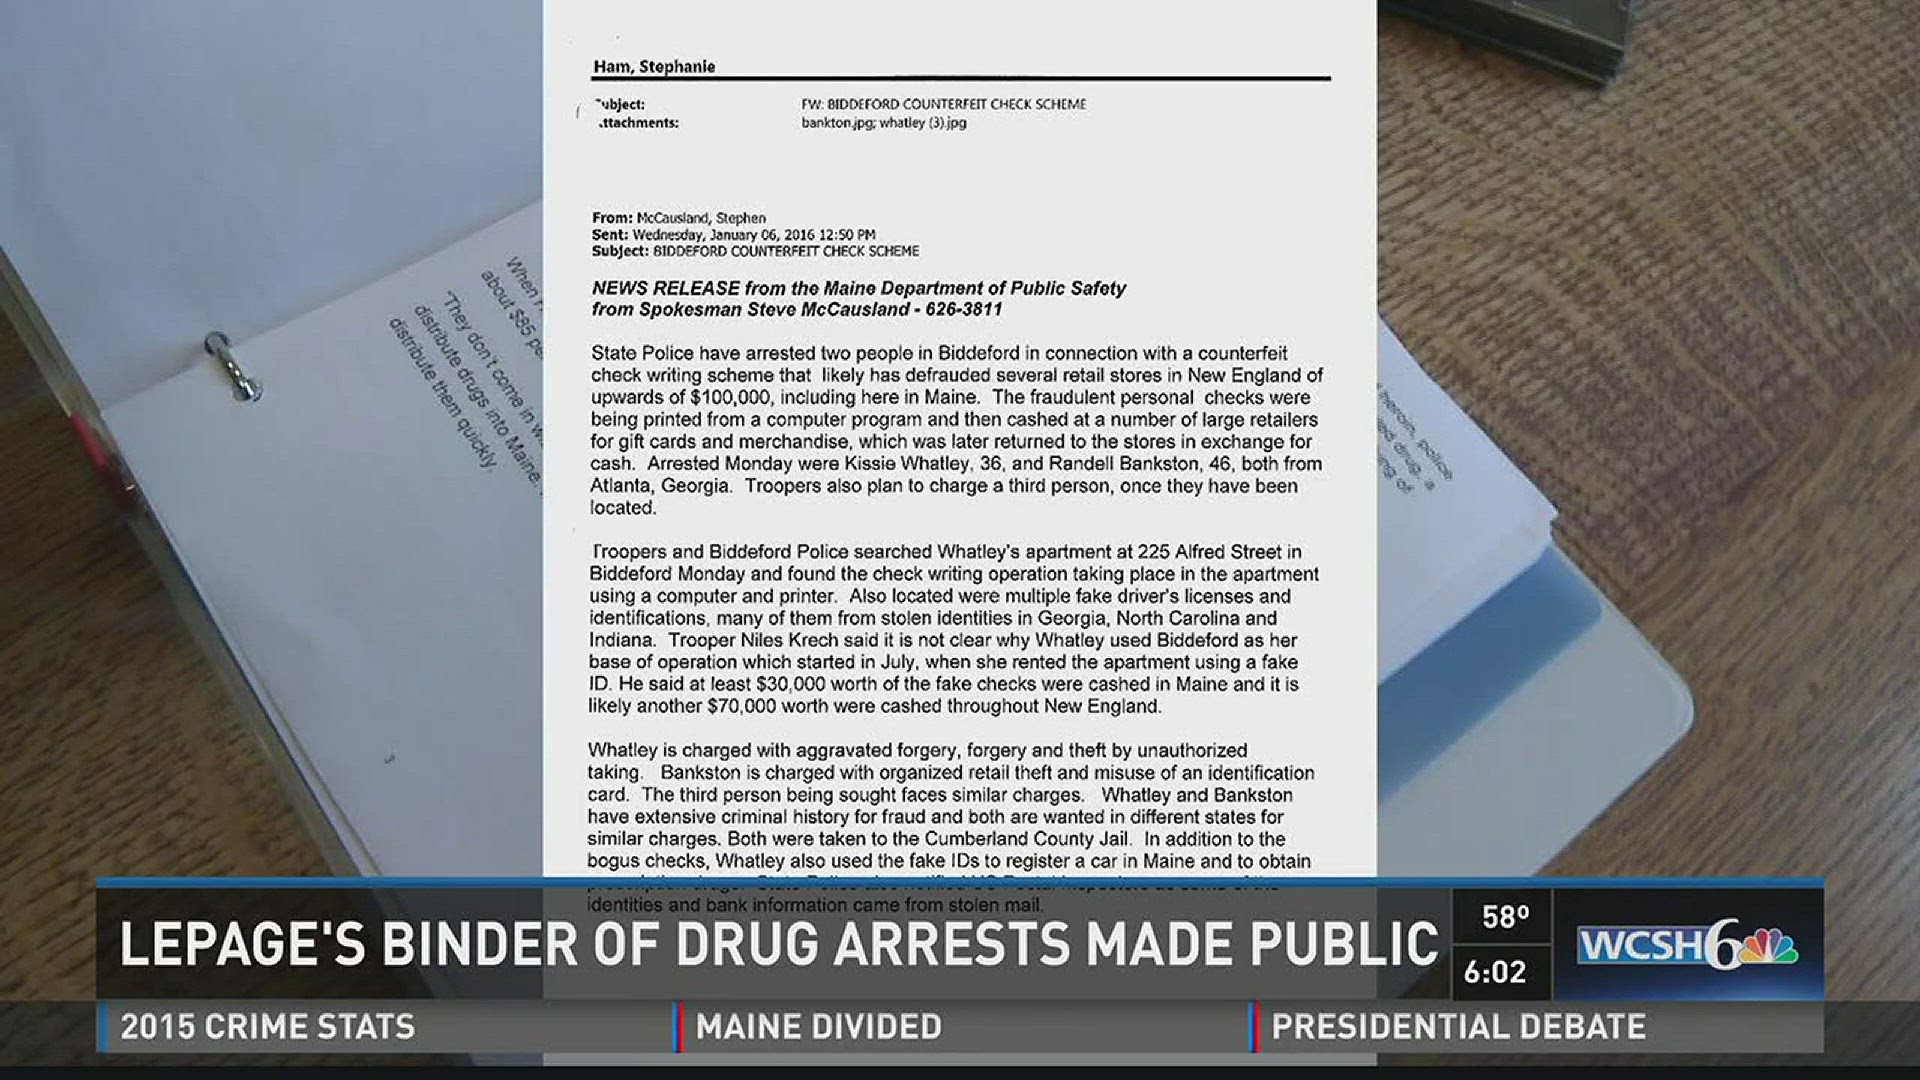 LePage's binder of drug arrests made public